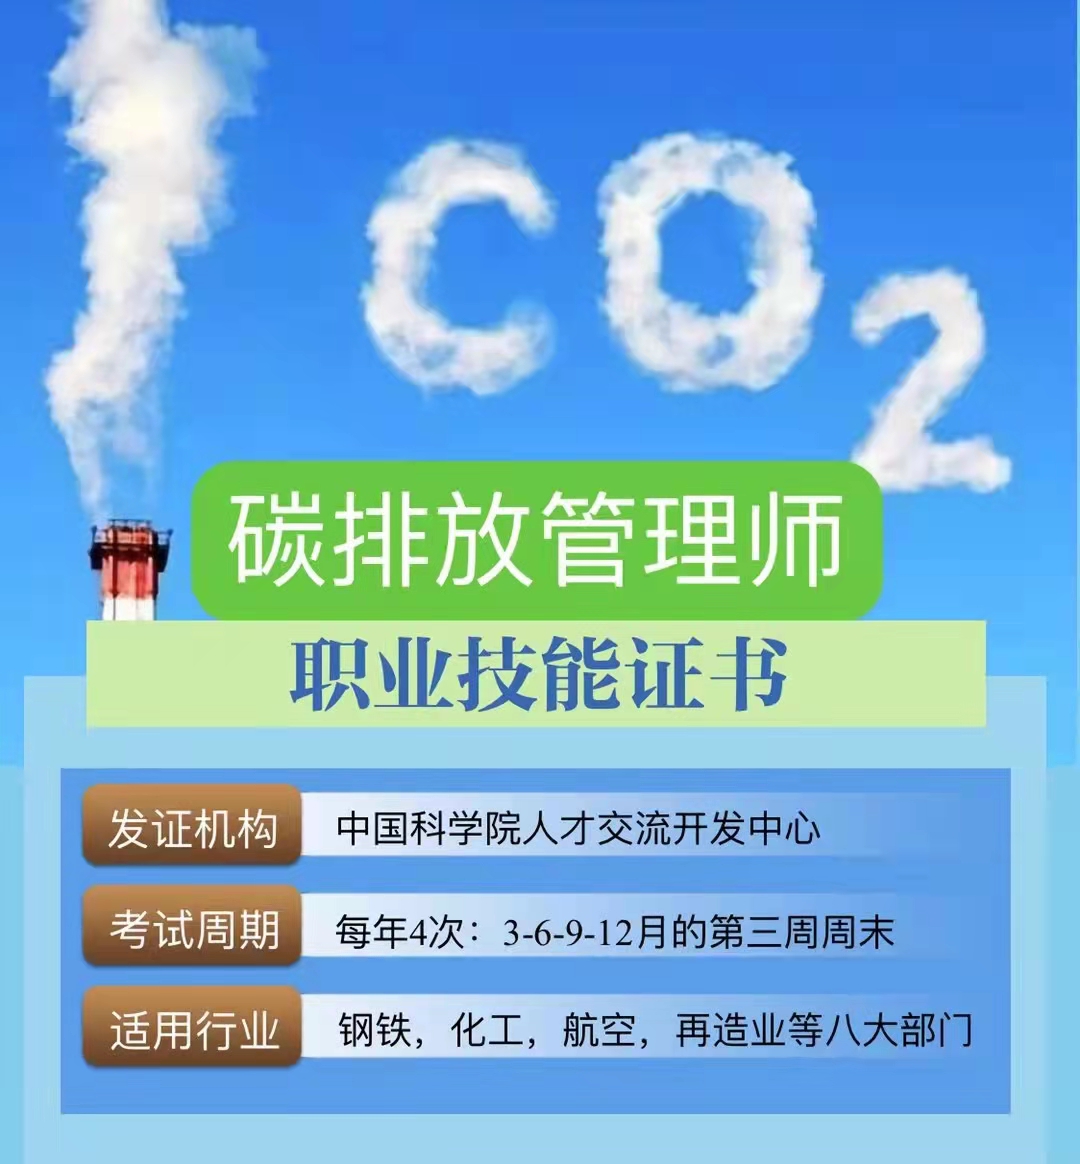 湖南不同产业空间的碳排放强度与碳足迹分析_碳排放_碳足迹和碳排放